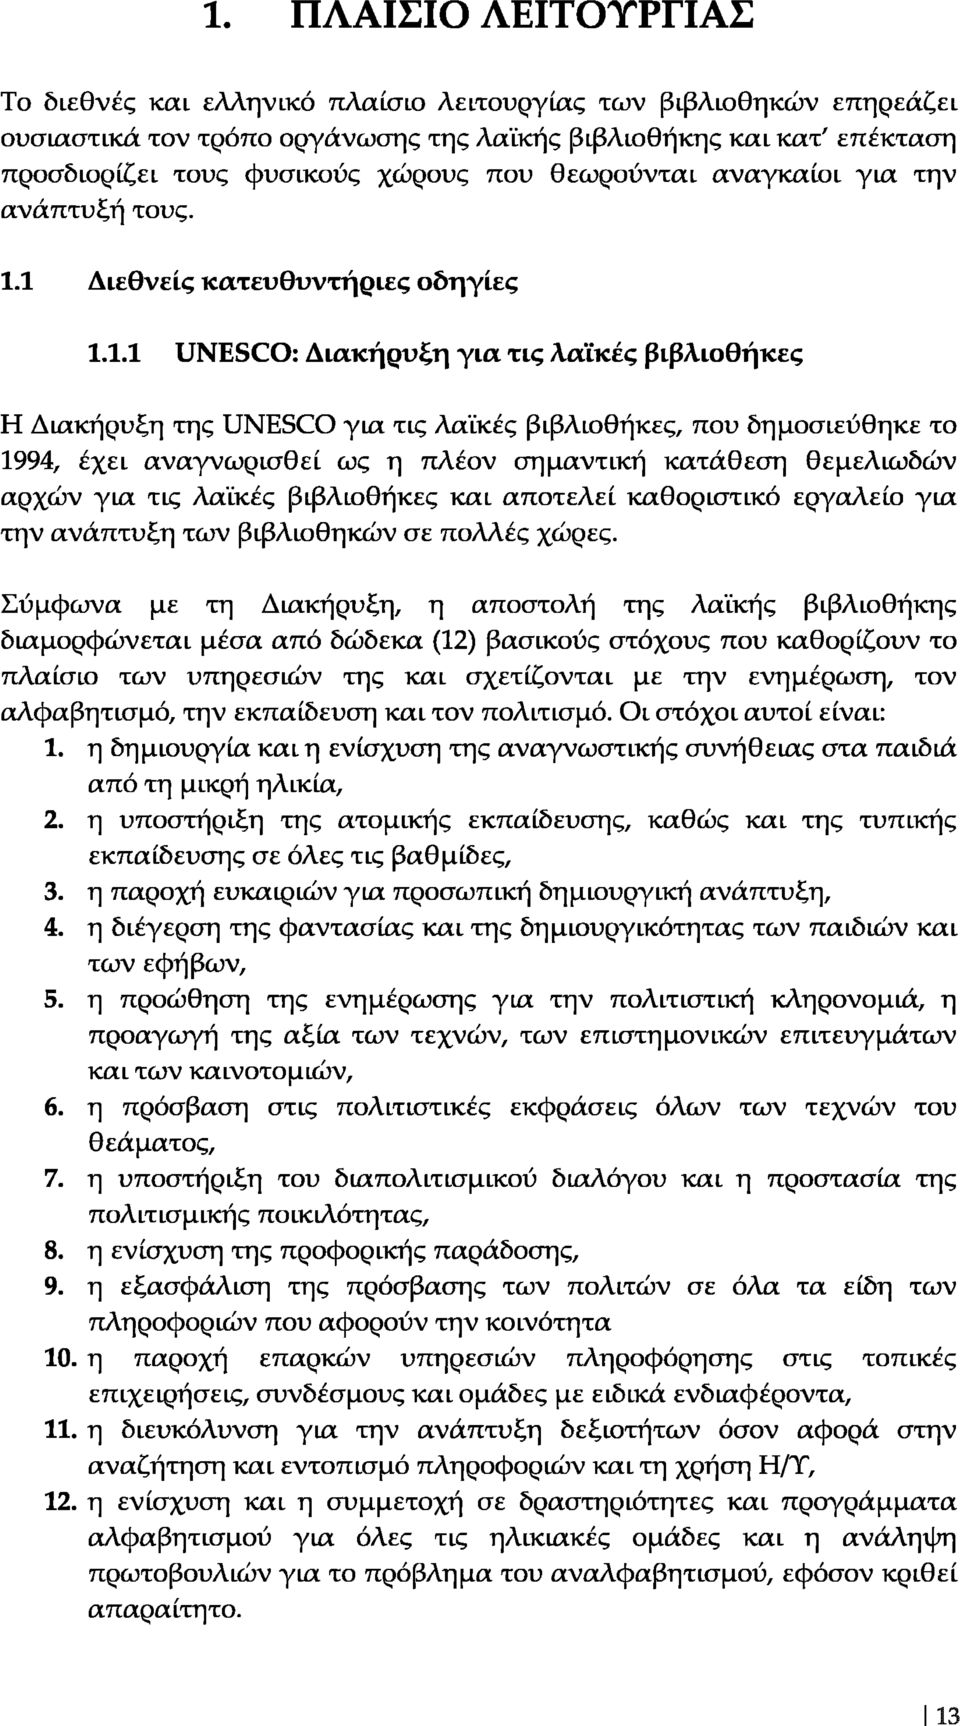 1 Διεθνείς κατευθυντήριες οδηγίες 1.1.1 UNESCO: Διακήρυξη για τις λαϊκές βιβλιοθήκες Η Διακήρυξη της UNESCO για τις λαϊκές βιβλιοθήκες, που δημοσιεύθηκε το 1994, έχει αναγνωρισθεί ως η πλέον